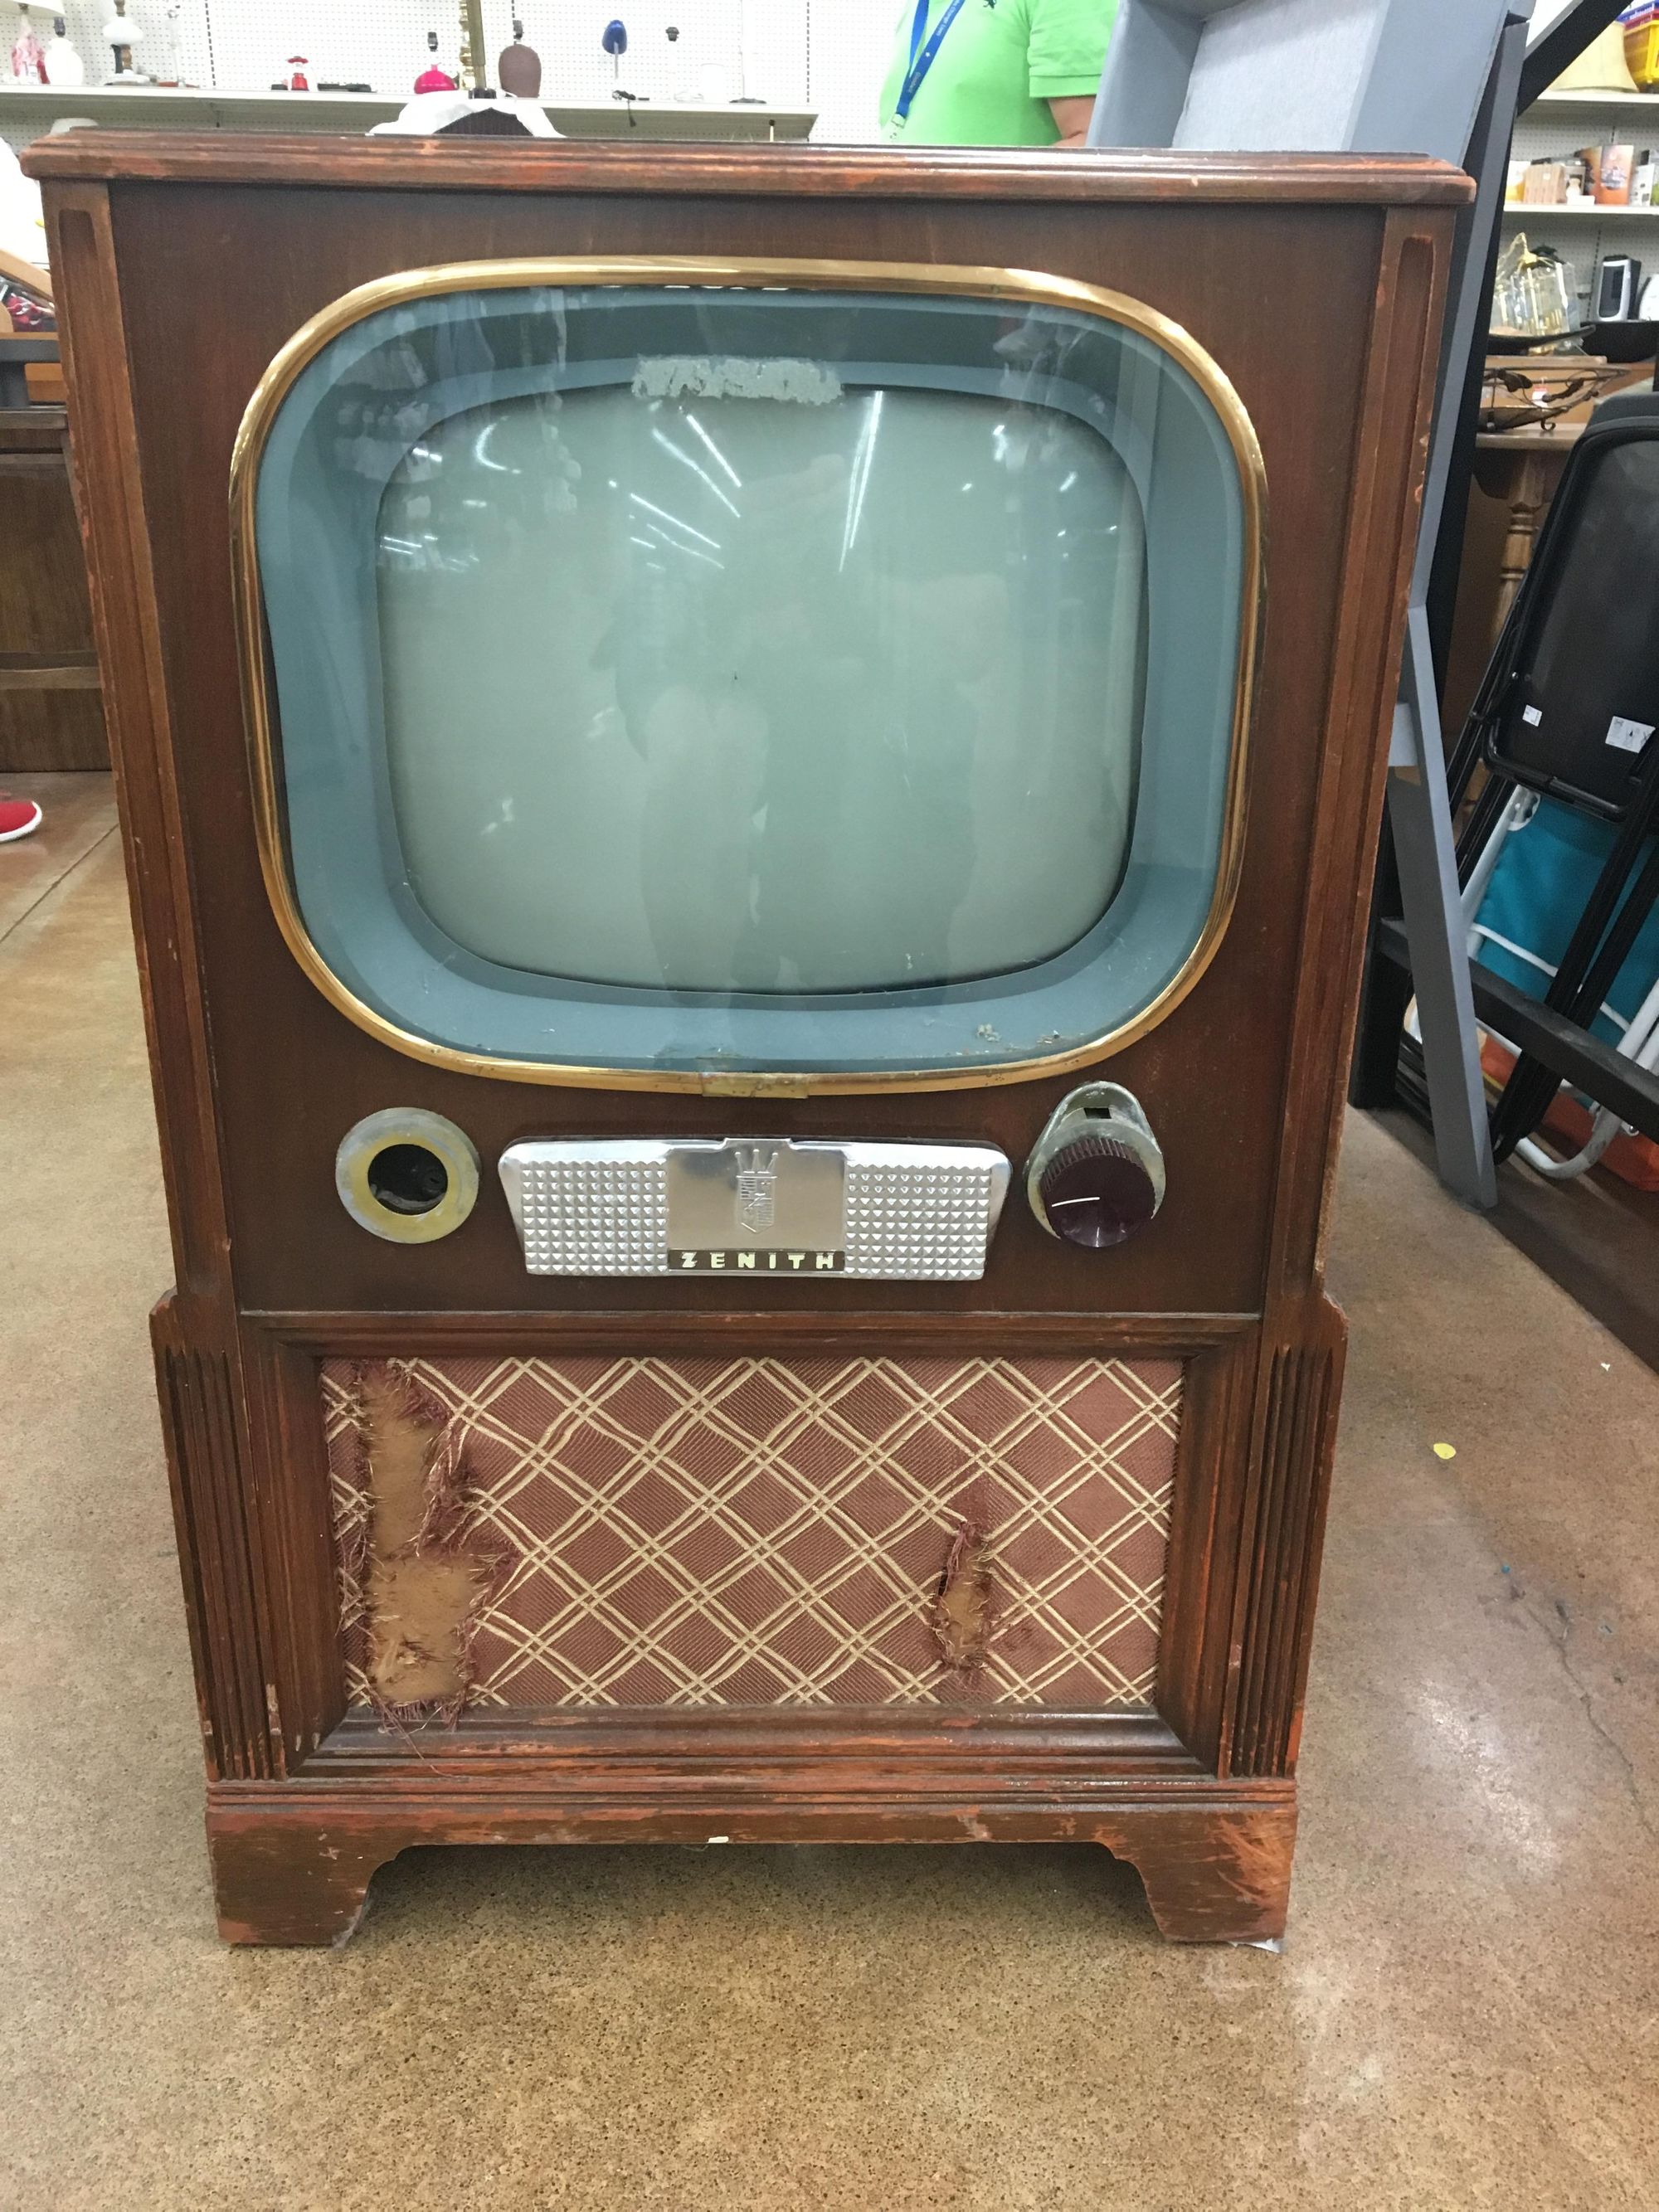 TV era 1950an